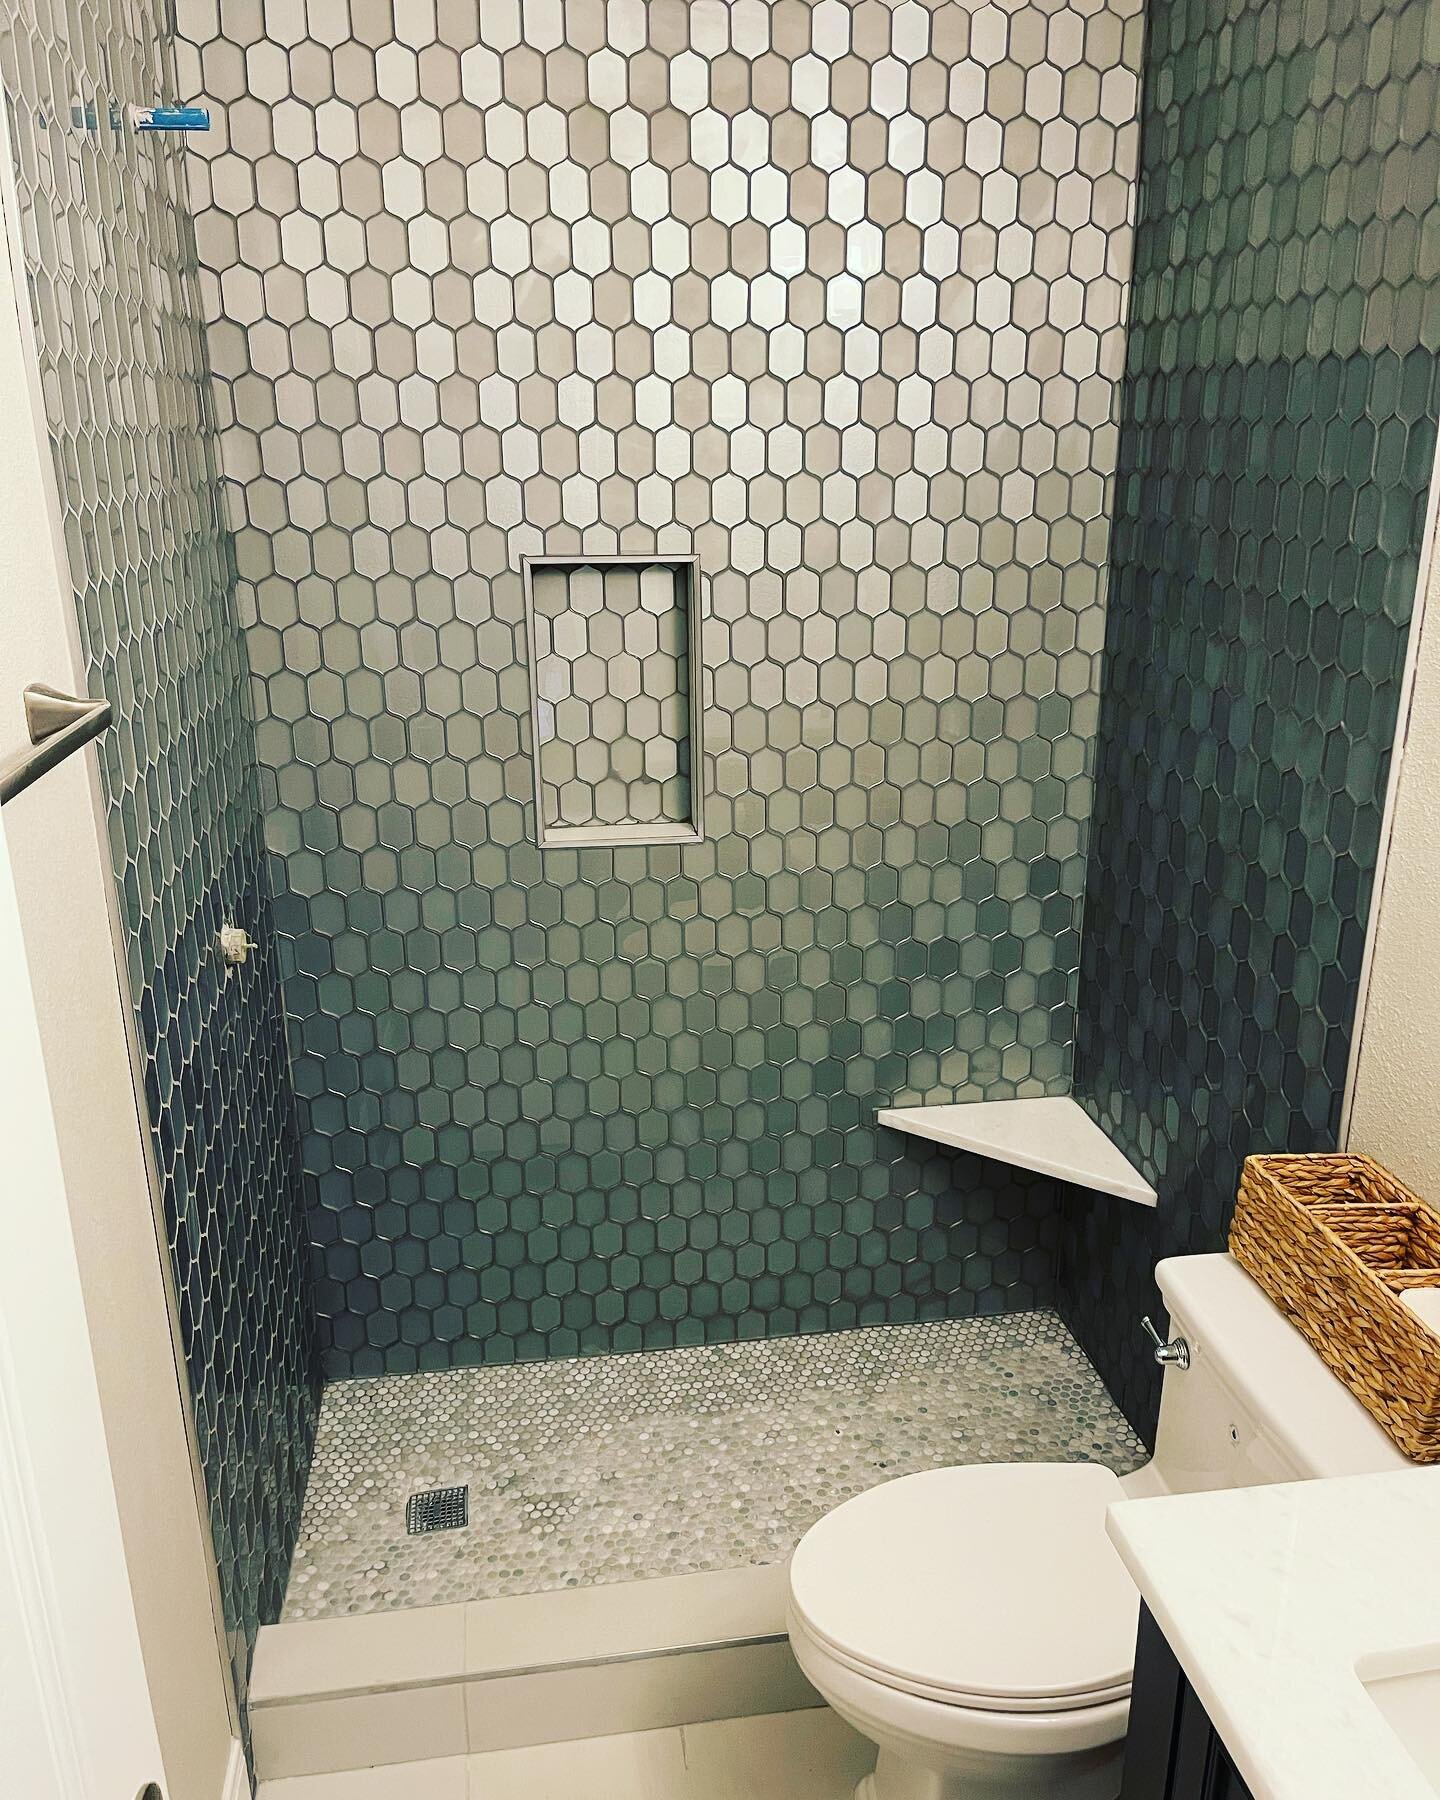 That #tile #bathroomremodel